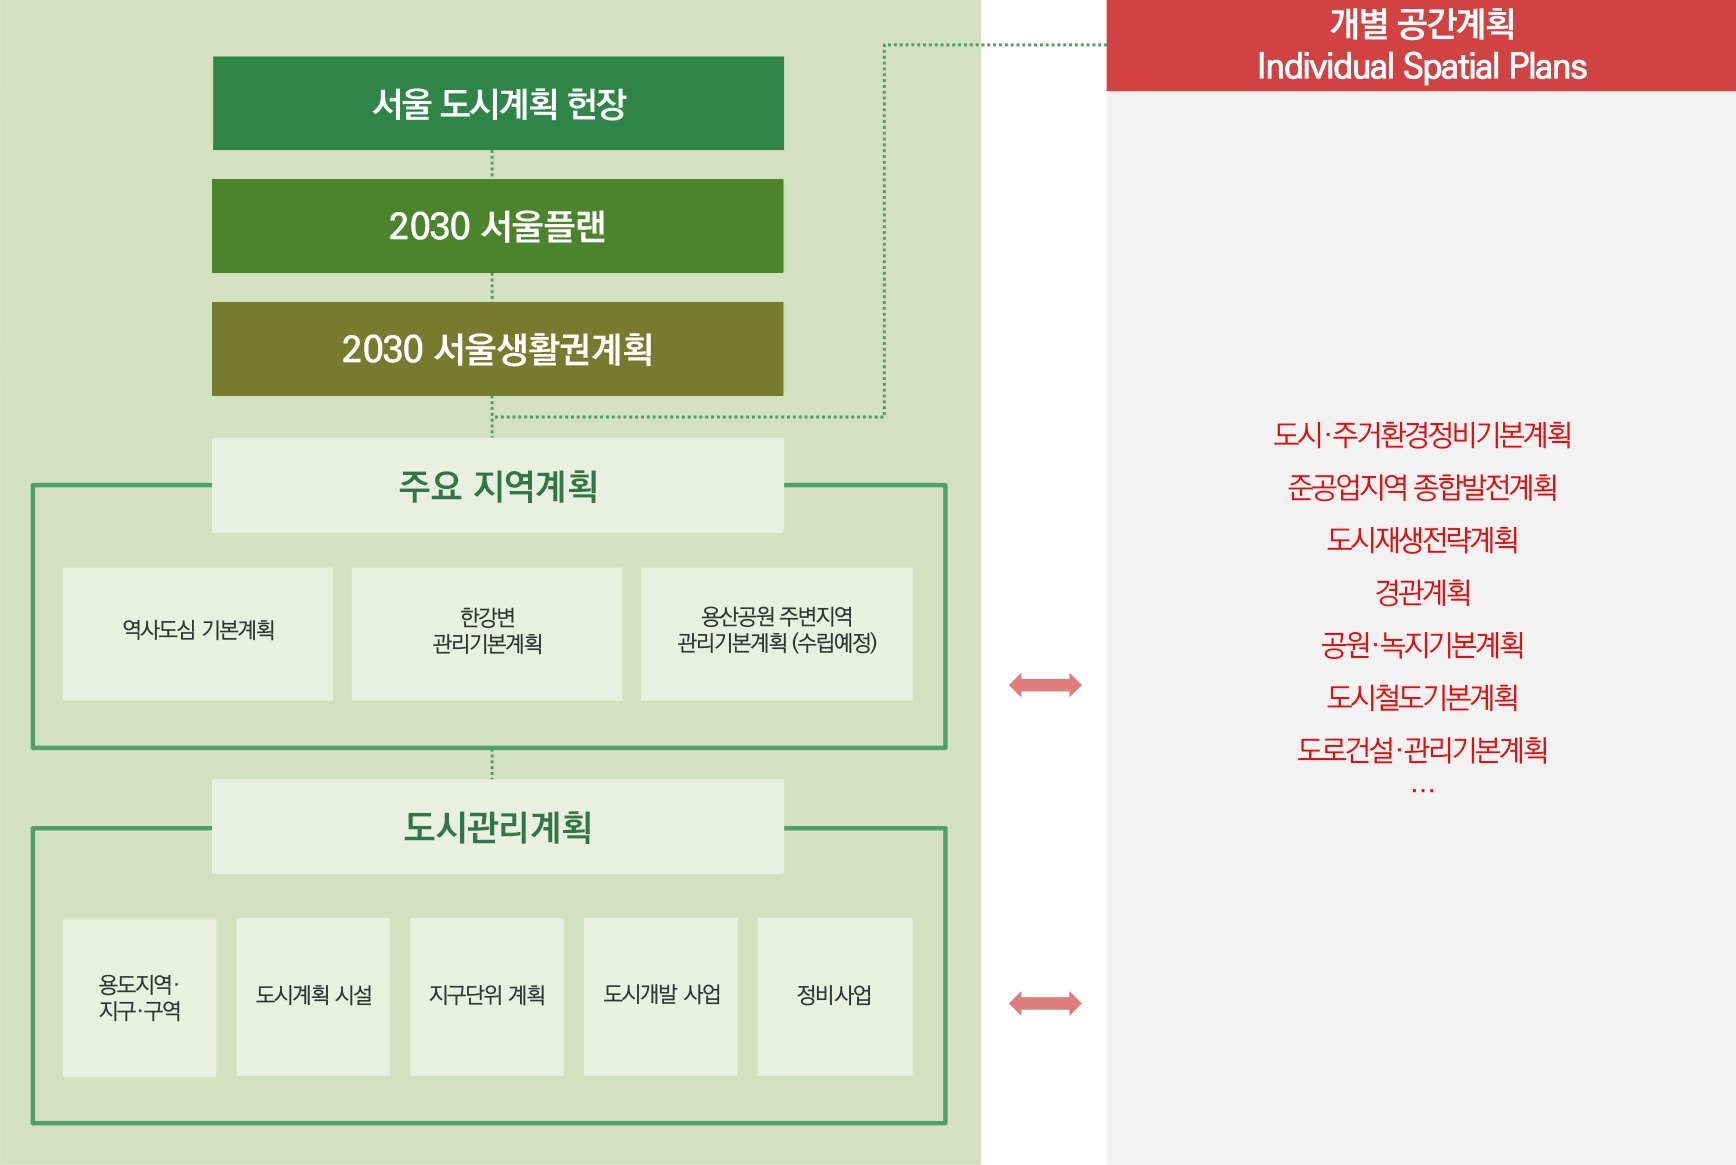 서울의 도시계획체계는 서울 도시계획 헌장, 2030 서울플렌, 2030 서울생활권계획 을 기반으로 하고 개별공간계획(도시·주거환경정비기본계획, 준공업지역 종합발전계획, 도시재생전략계획, 경관계획, 공원·녹지기본계획, 도로건설·관리기본계획등)과 상호작용을 하며 주요 지역계획(역사도심 기본계획, 한강변 관리기본계획, 용산공원 주변지역 관리기본계획(수립예정))과 도시관리계획(용도지역·지구·구역, 도시계획시설, 지구단위 계획, 도시개발 사업, 정비사업) 정책을 관리하고 있다.